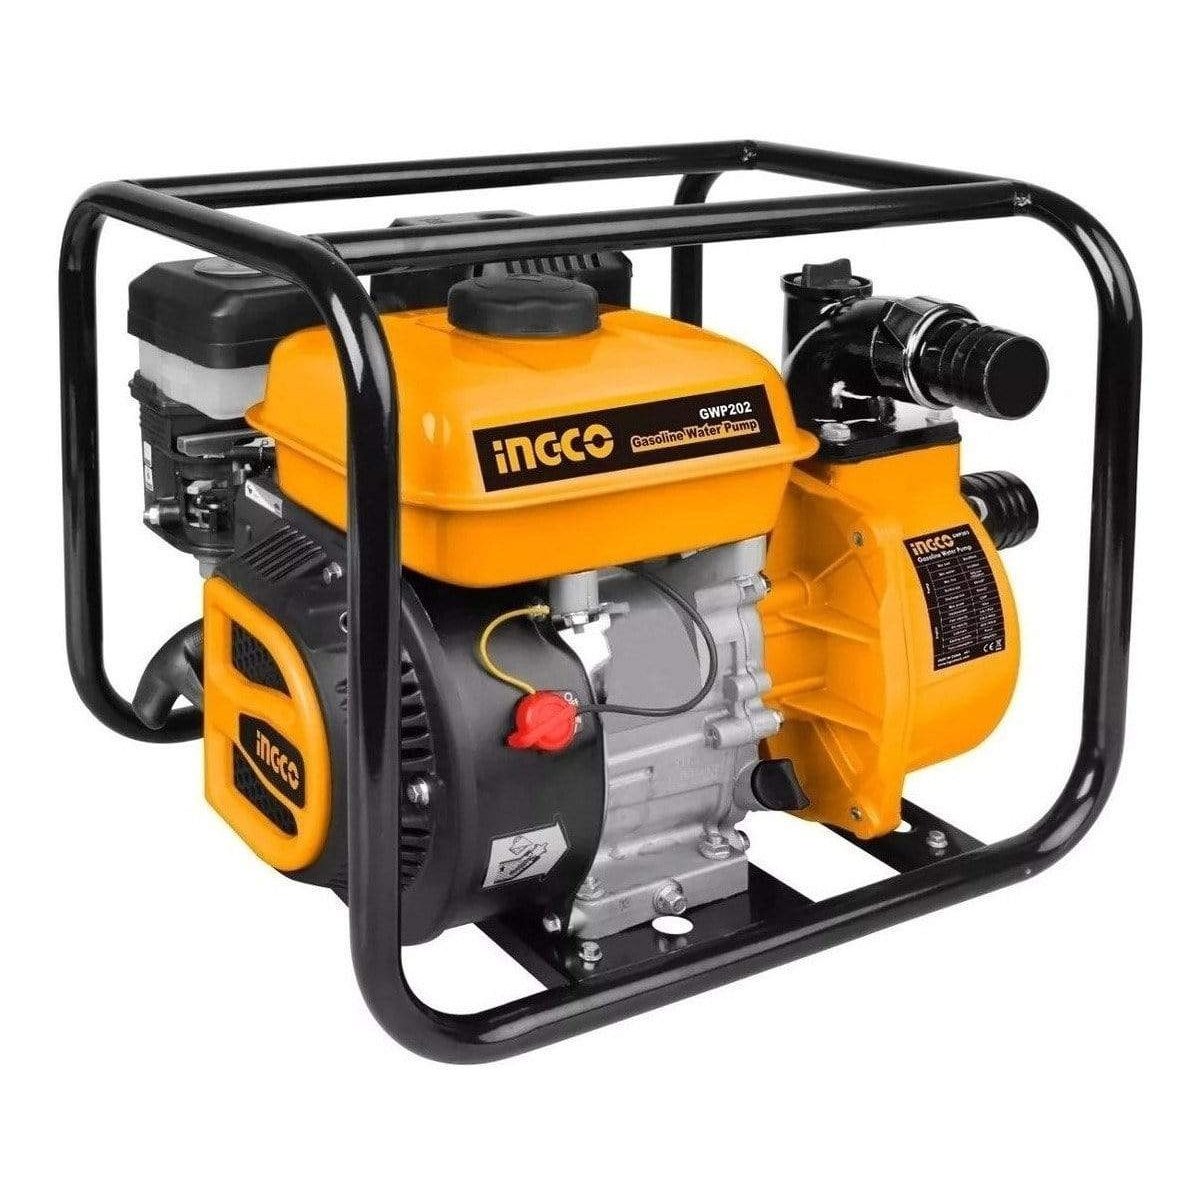 Ingco 3″ Gasoline Water Pump - GWP302 supply-master